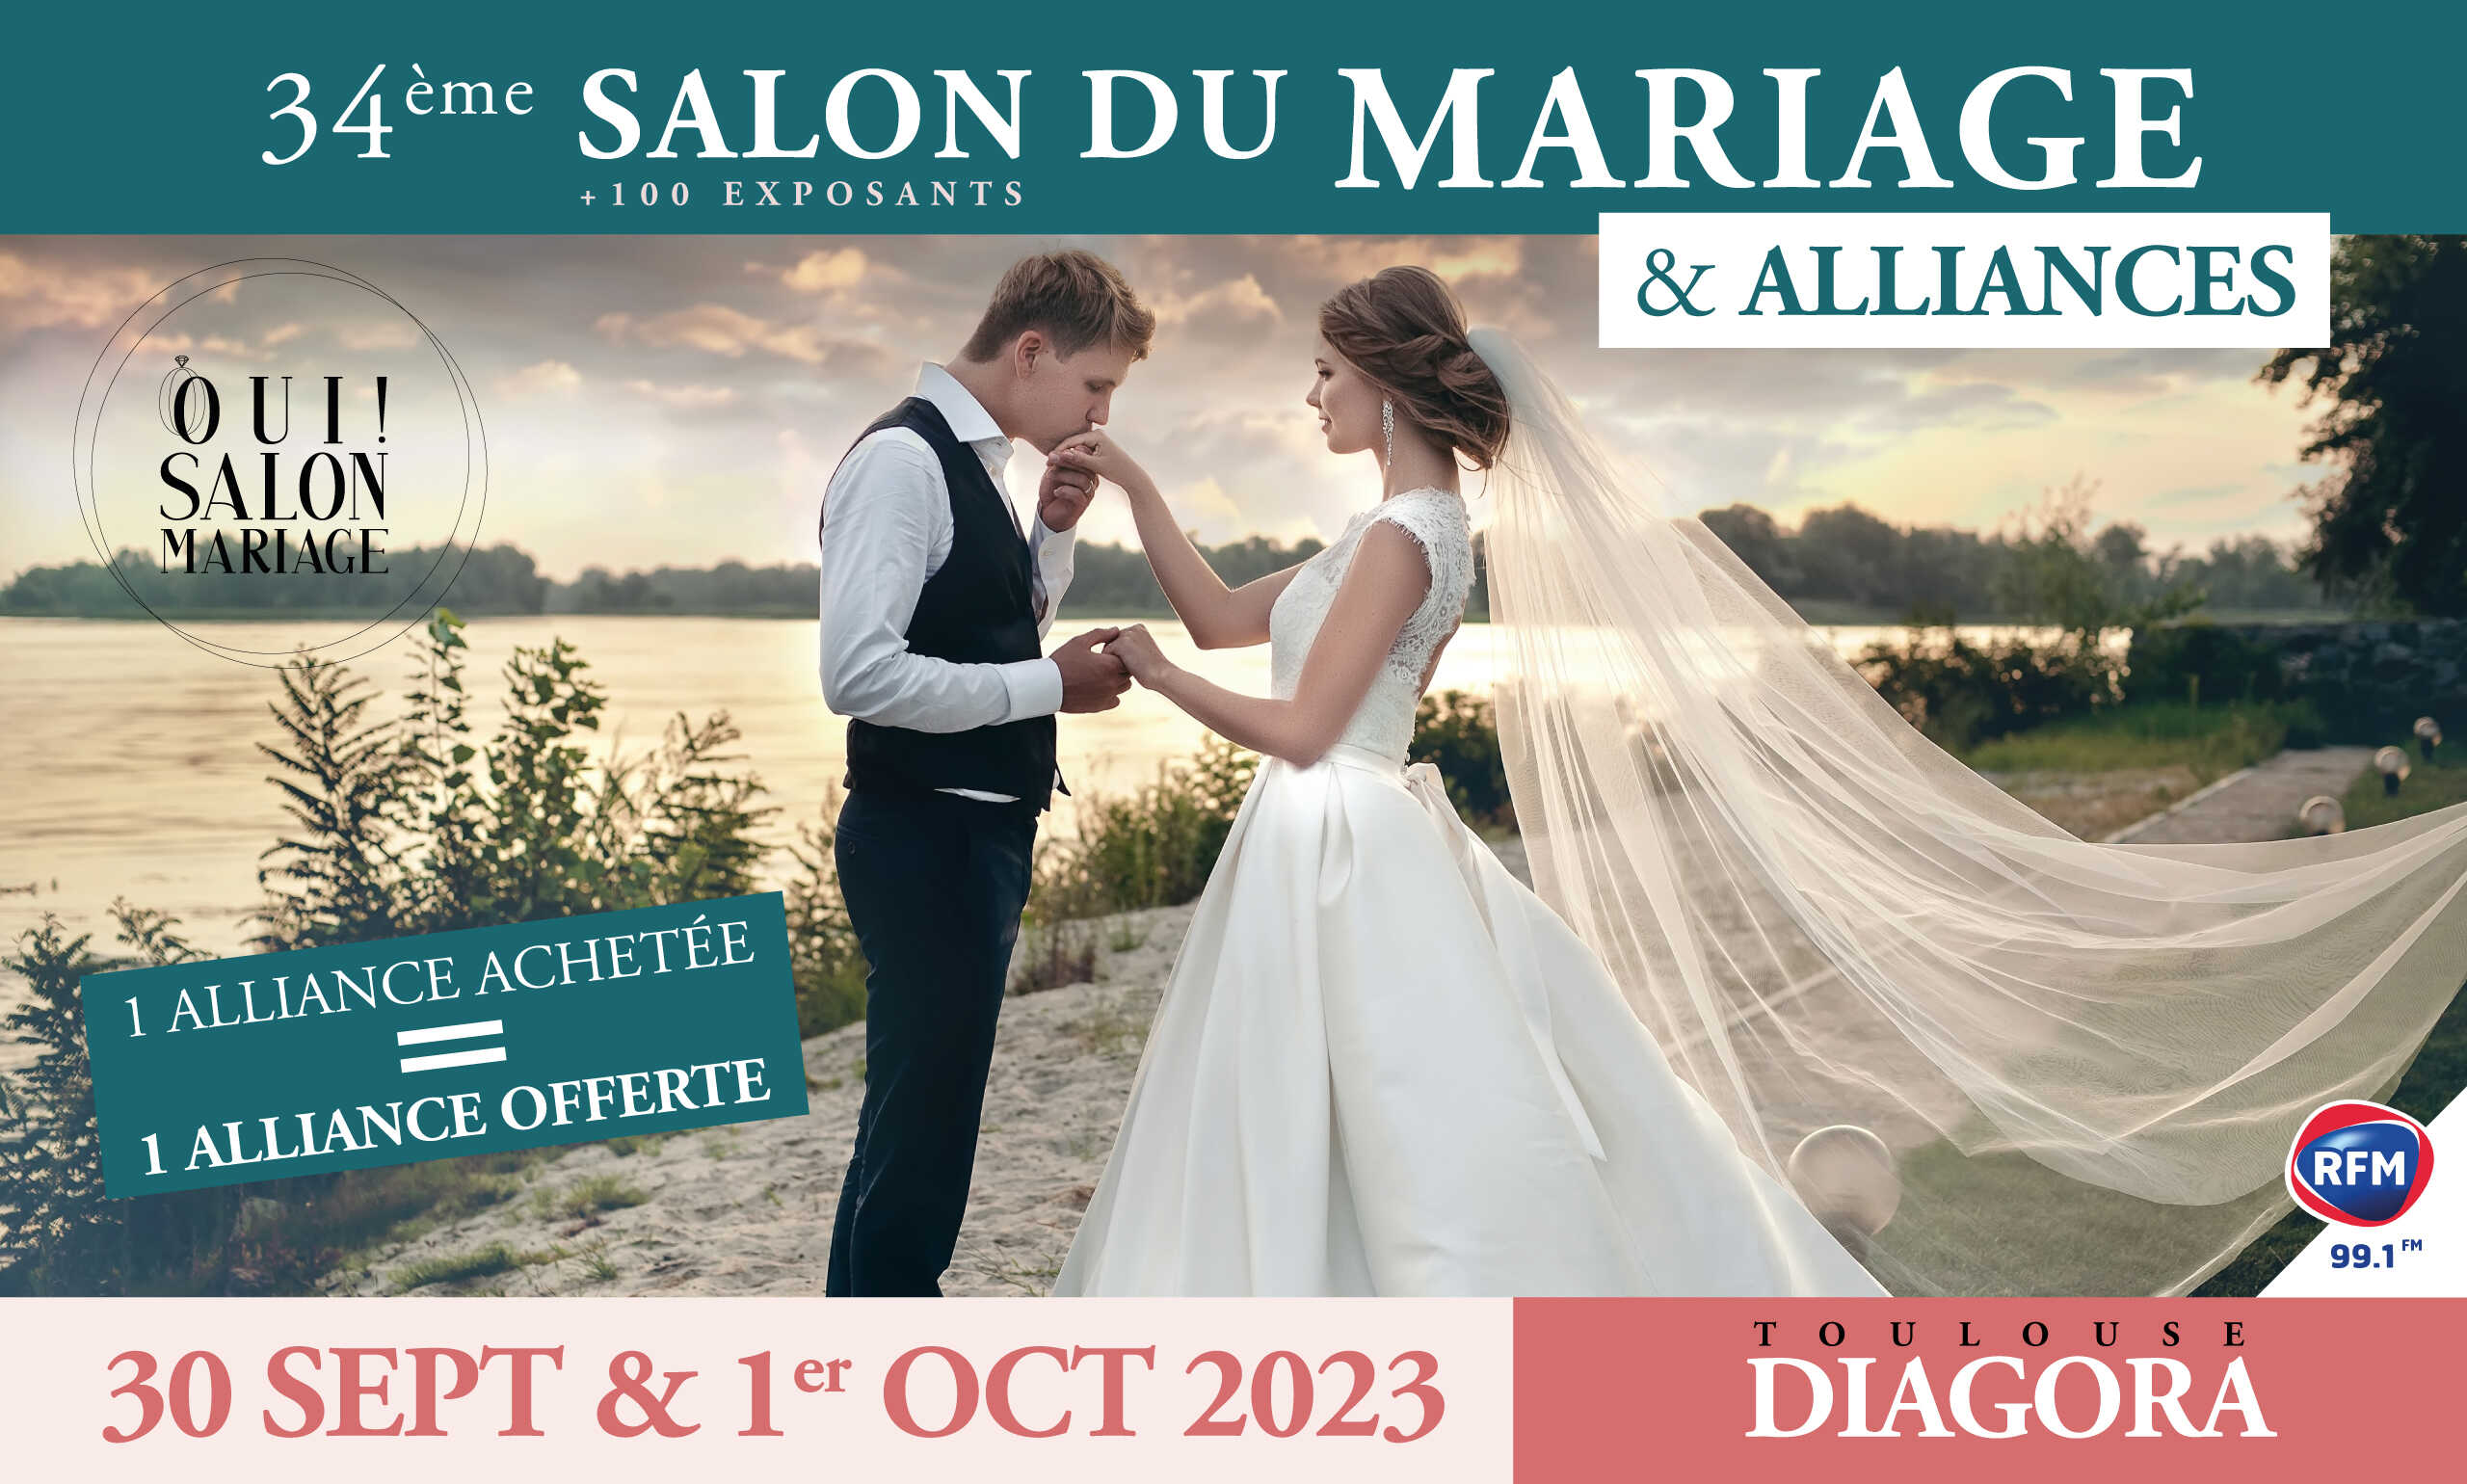 Affiche Salon du Mariage & Alliances 2023 Diagora Toulouse, 30 sept & 1er Oct